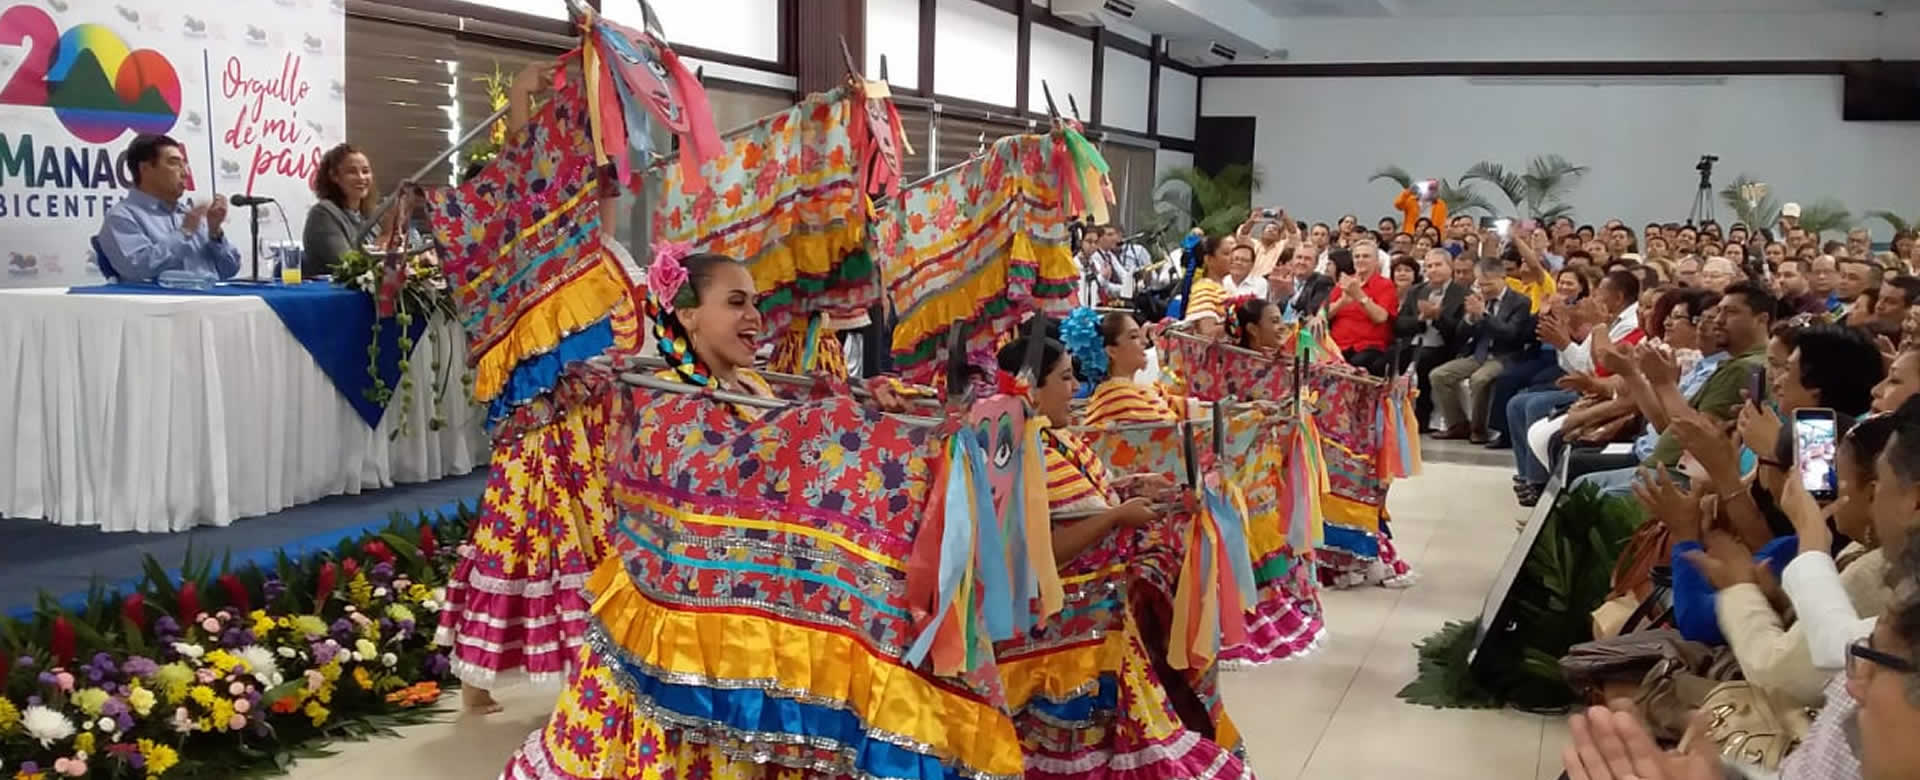 ALMA declara 2019 Año del Bicentenario de la leal Villa de Managua 1819-2019